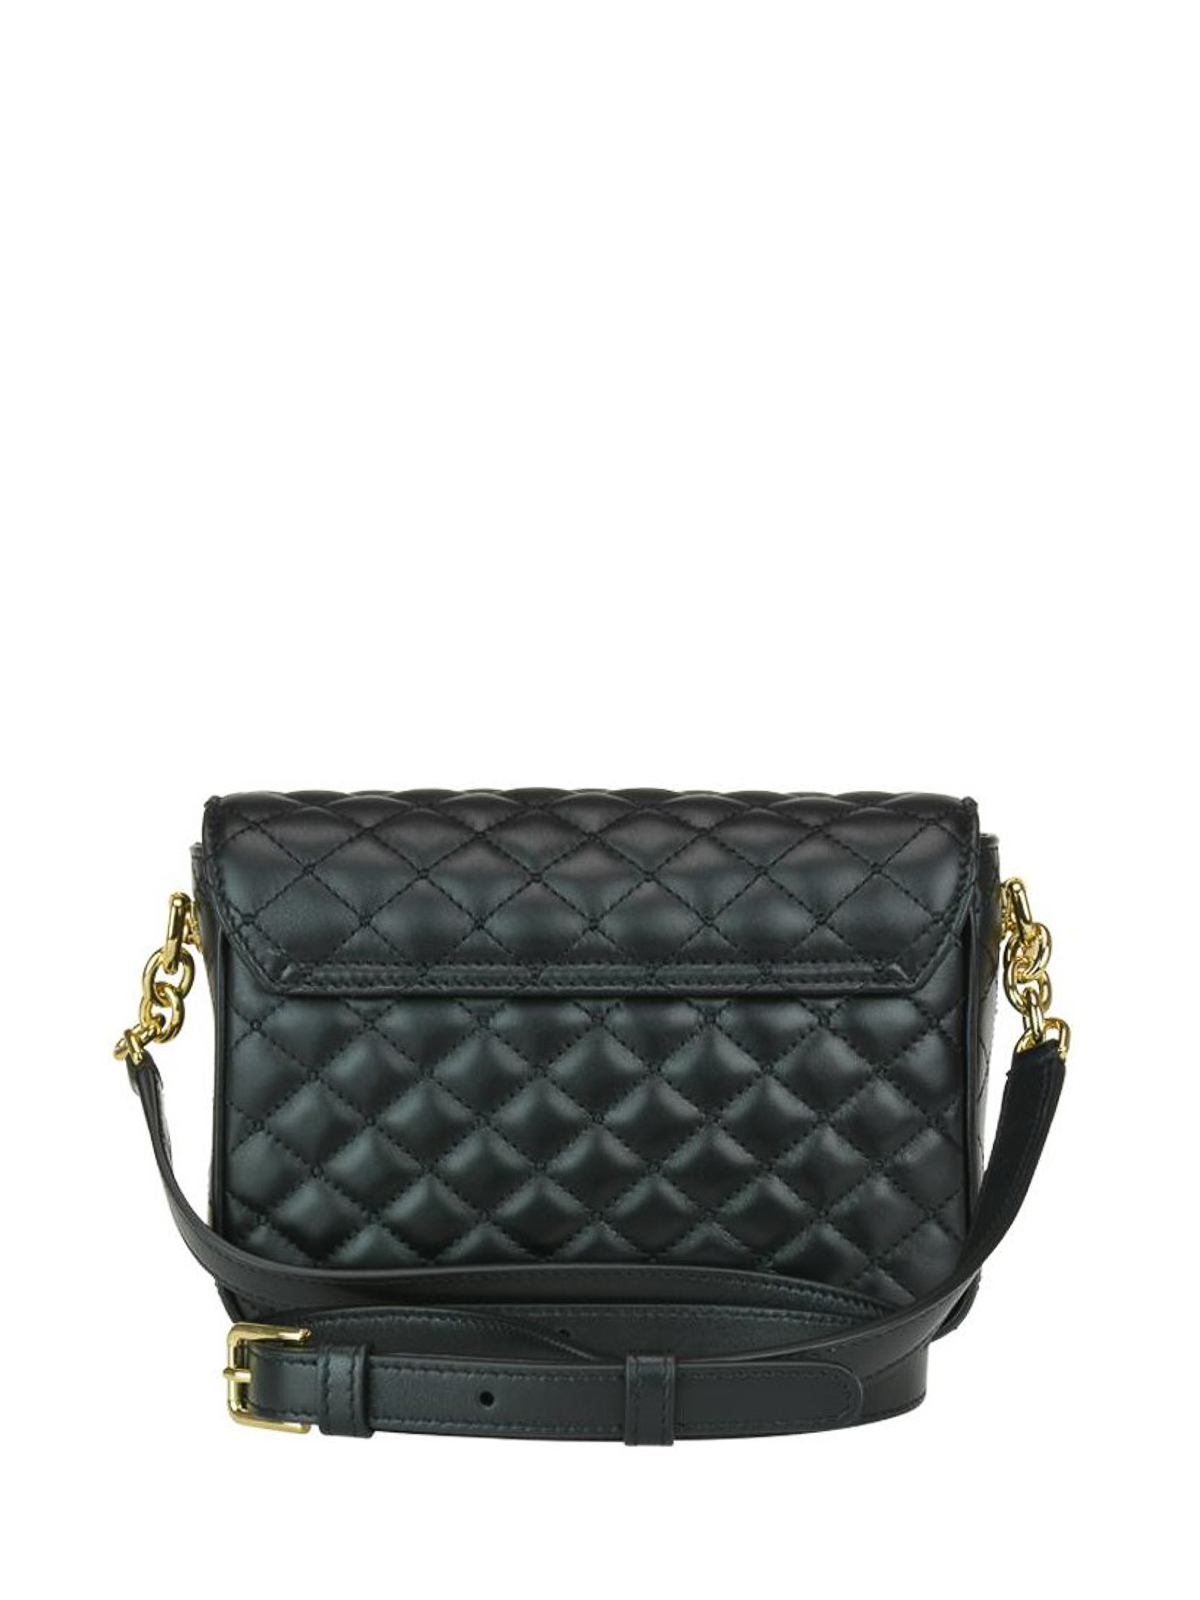 Quilted Leather Shoulder Bag in Black - Dolce Gabbana